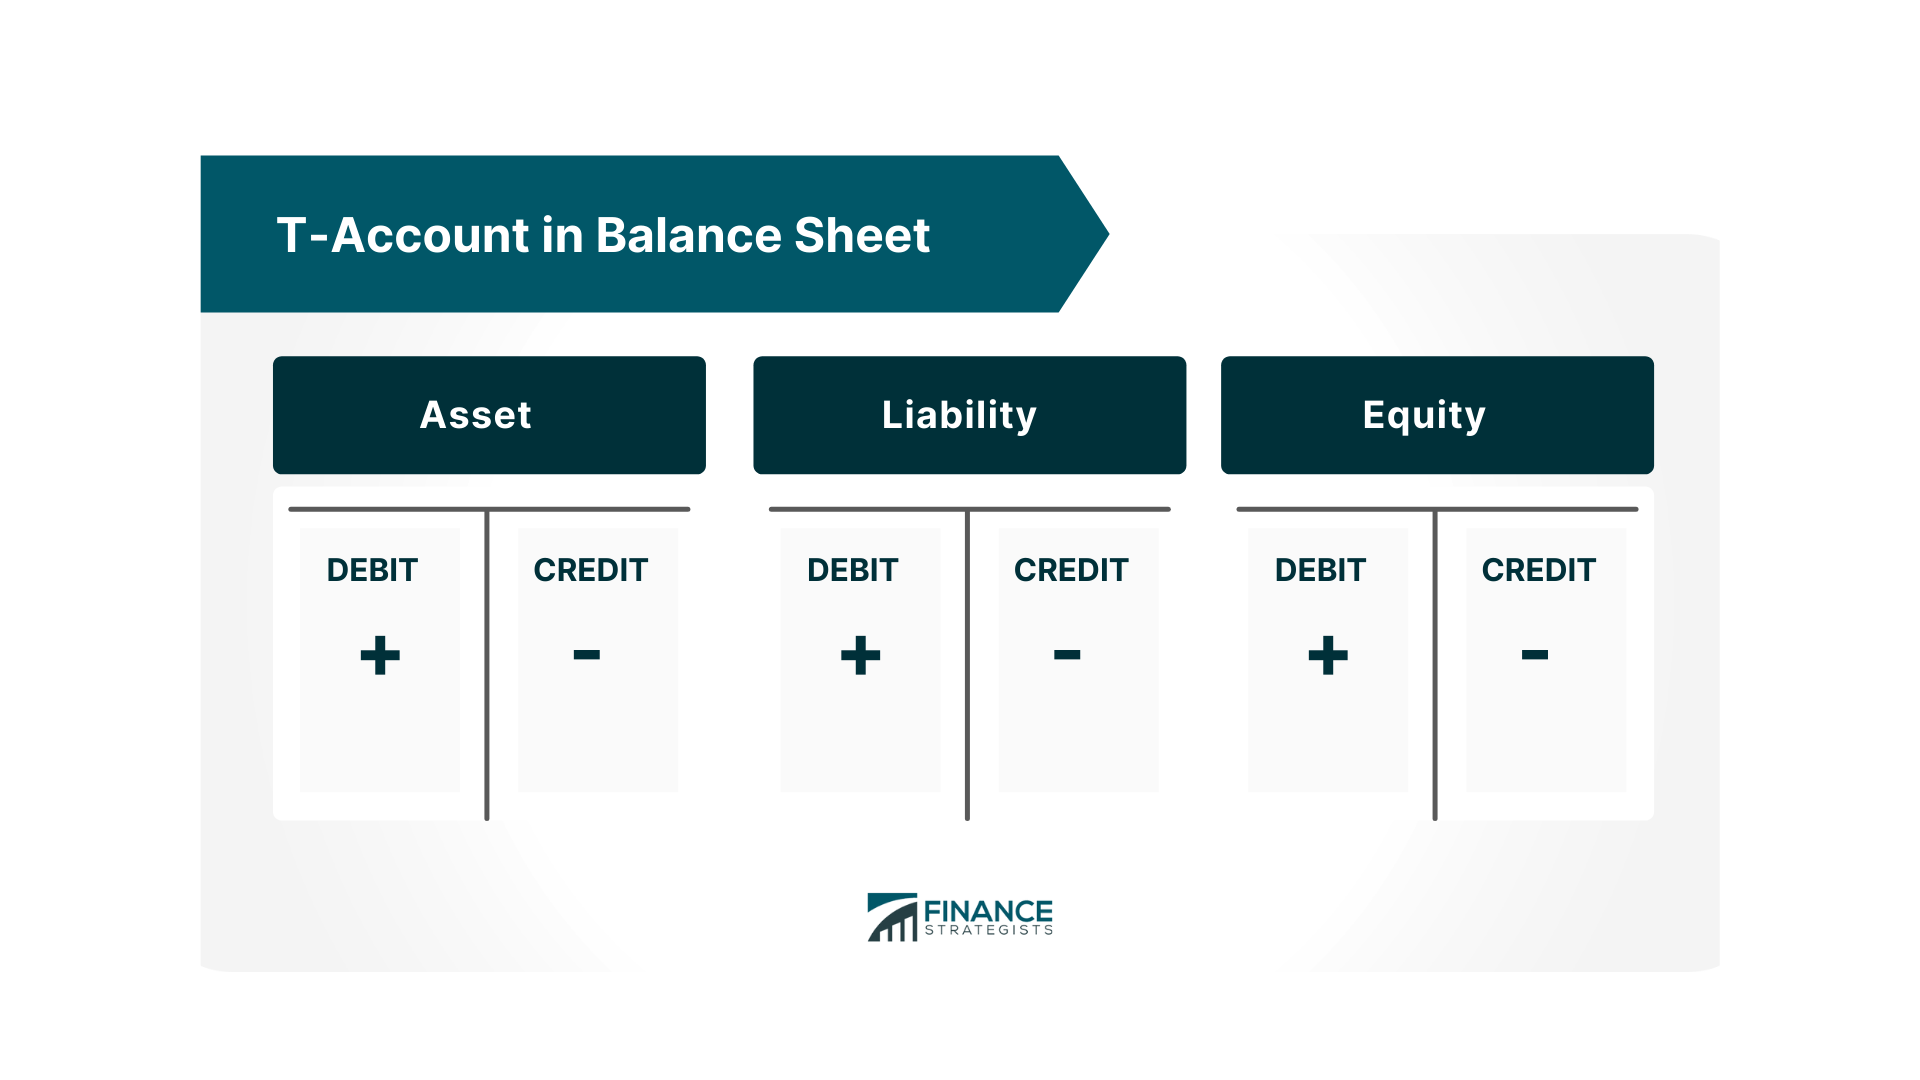 T-Account in Balance Sheet